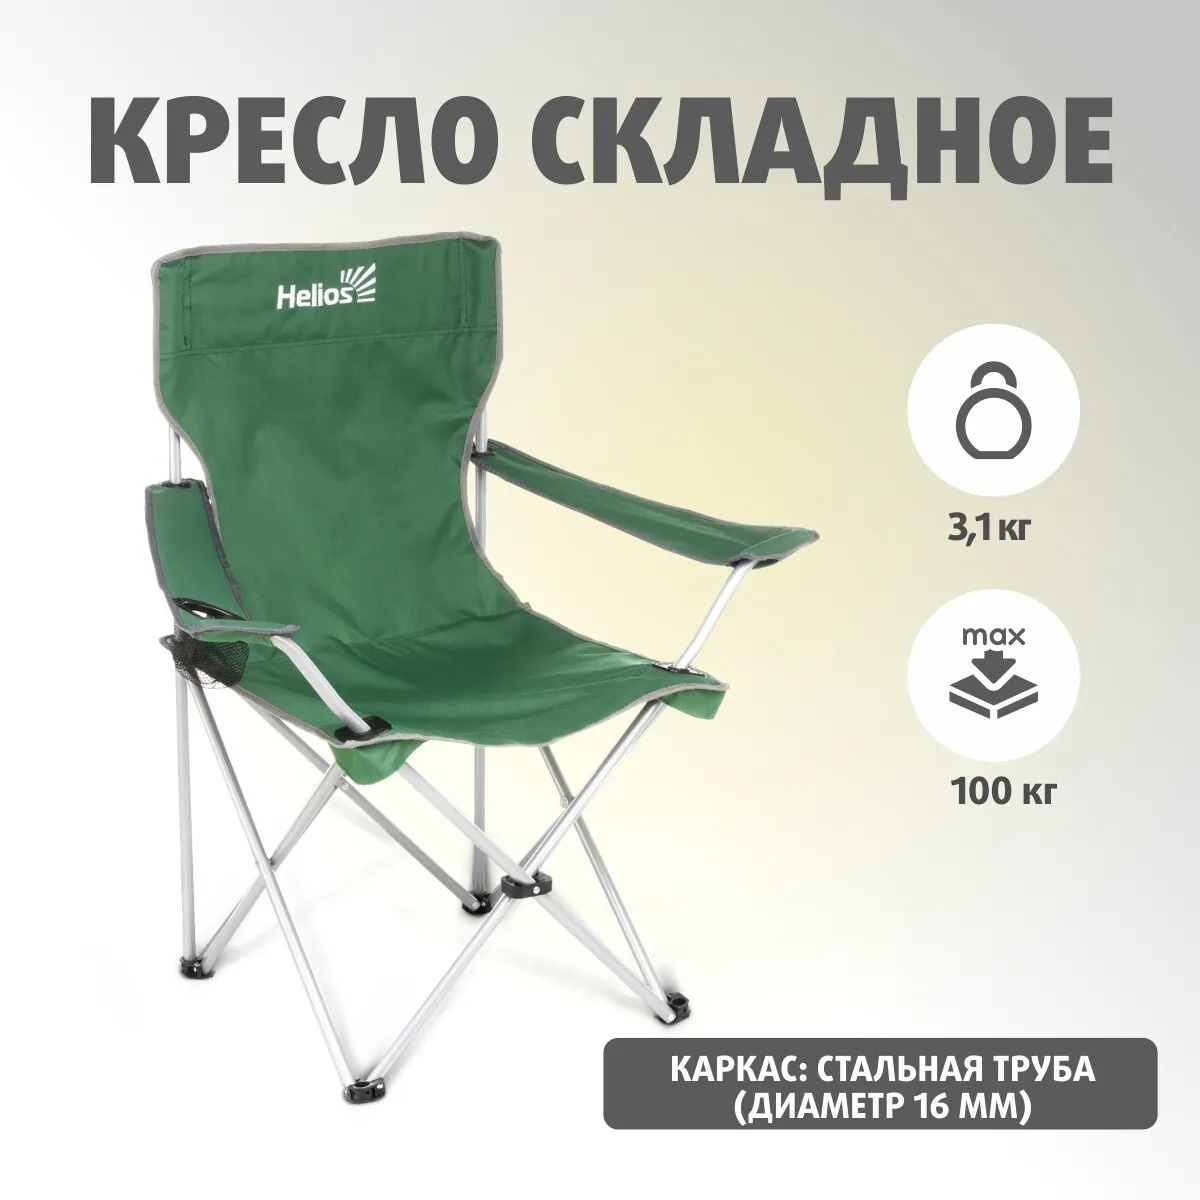 Реальное фото Кресло складное Helios HS-242H-G от магазина СпортЕВ